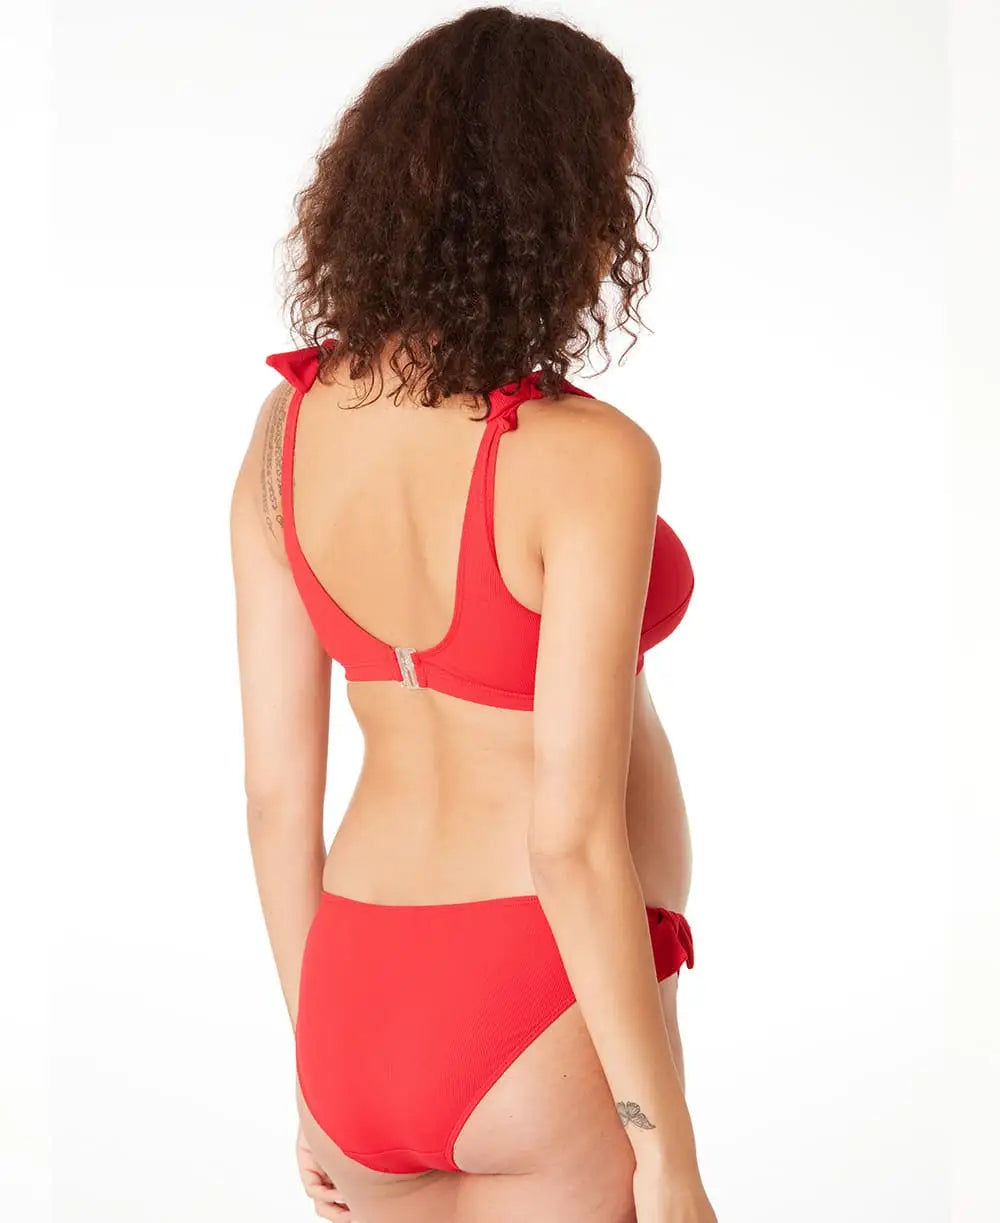 Maternity bikini Porto Vecchio red - Bikini